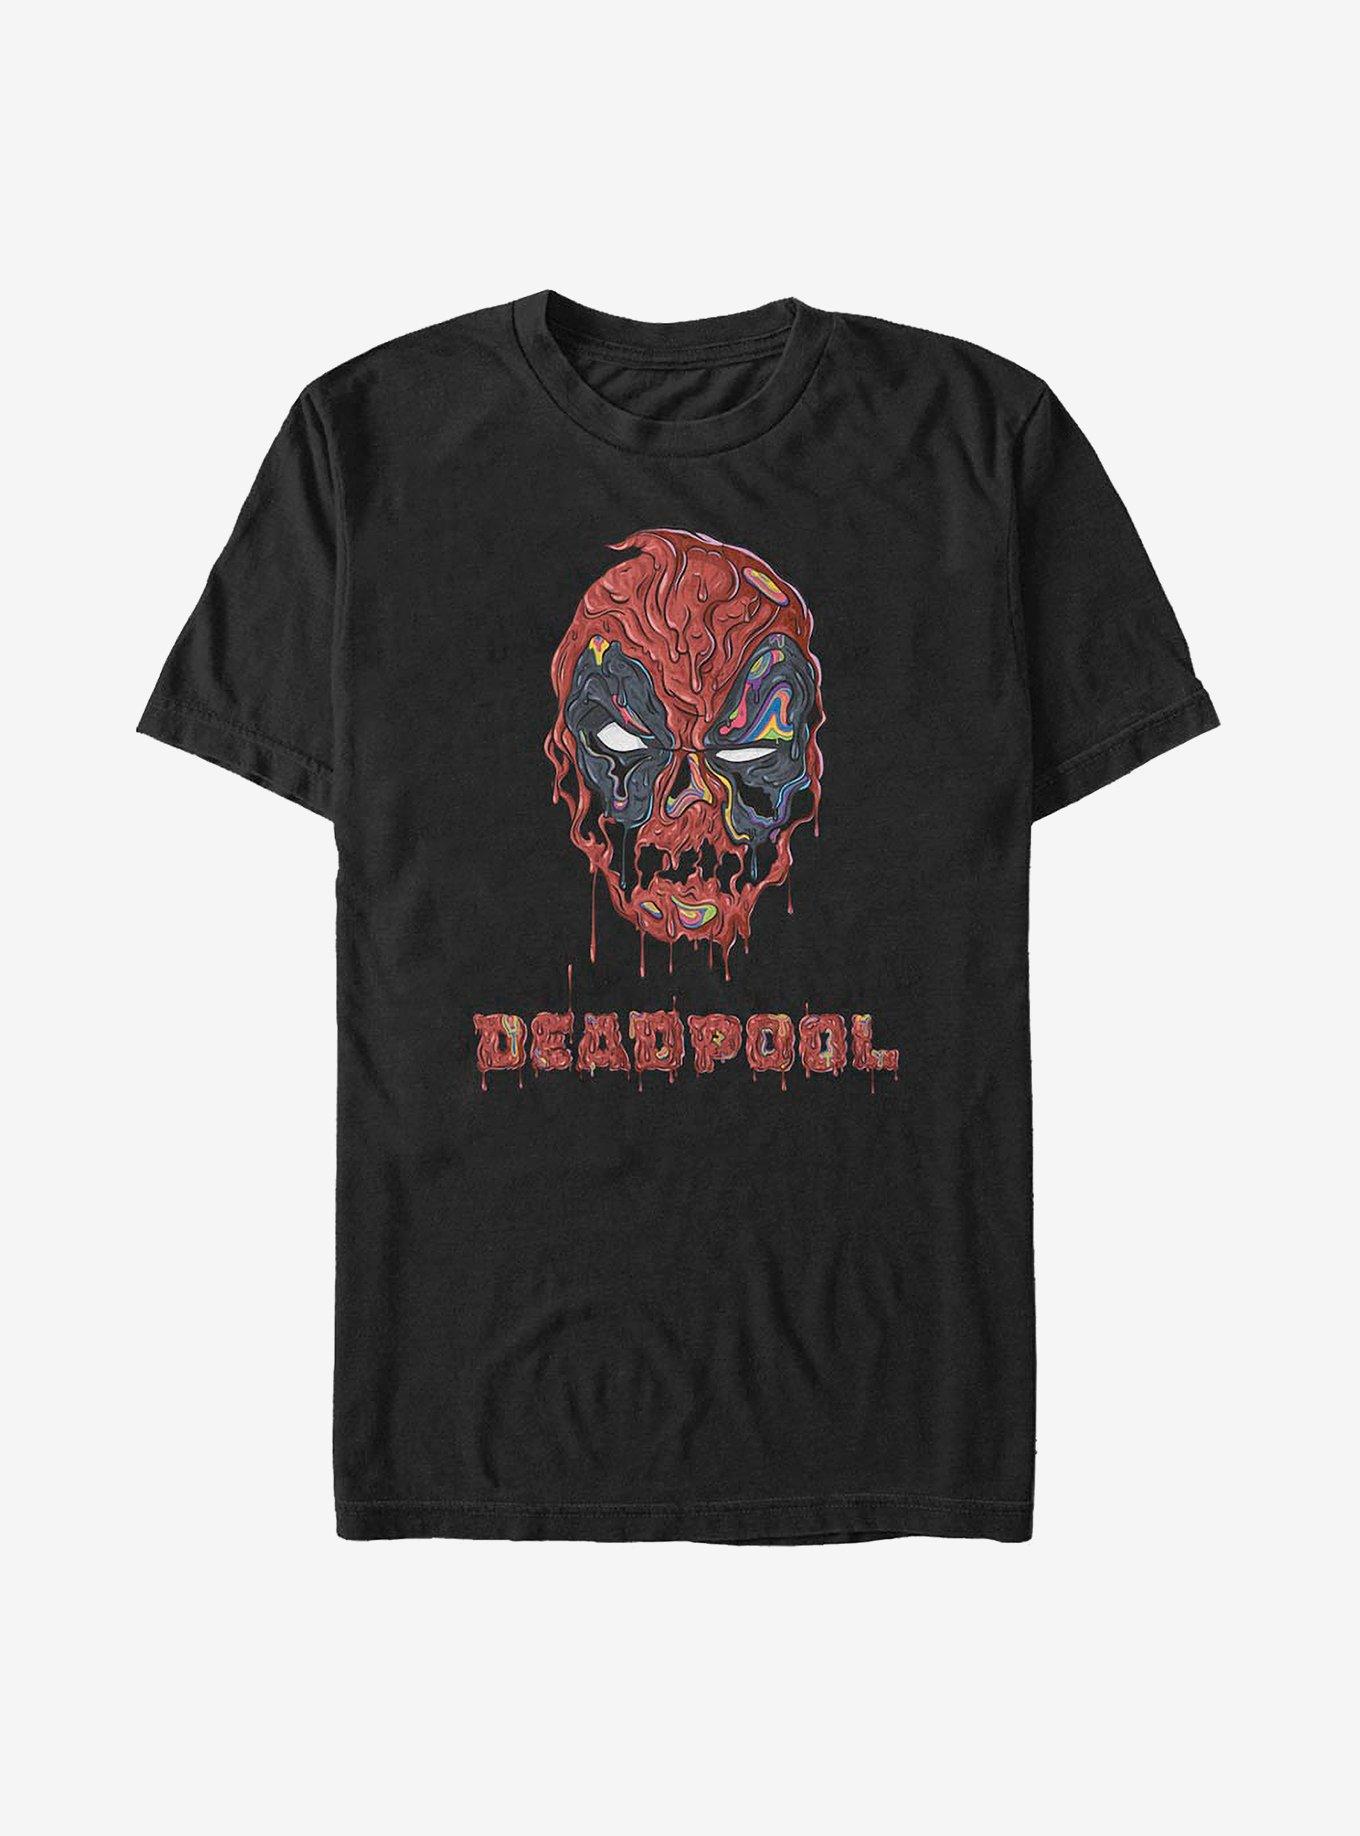 Marvel Deadpool Melting T-Shirt